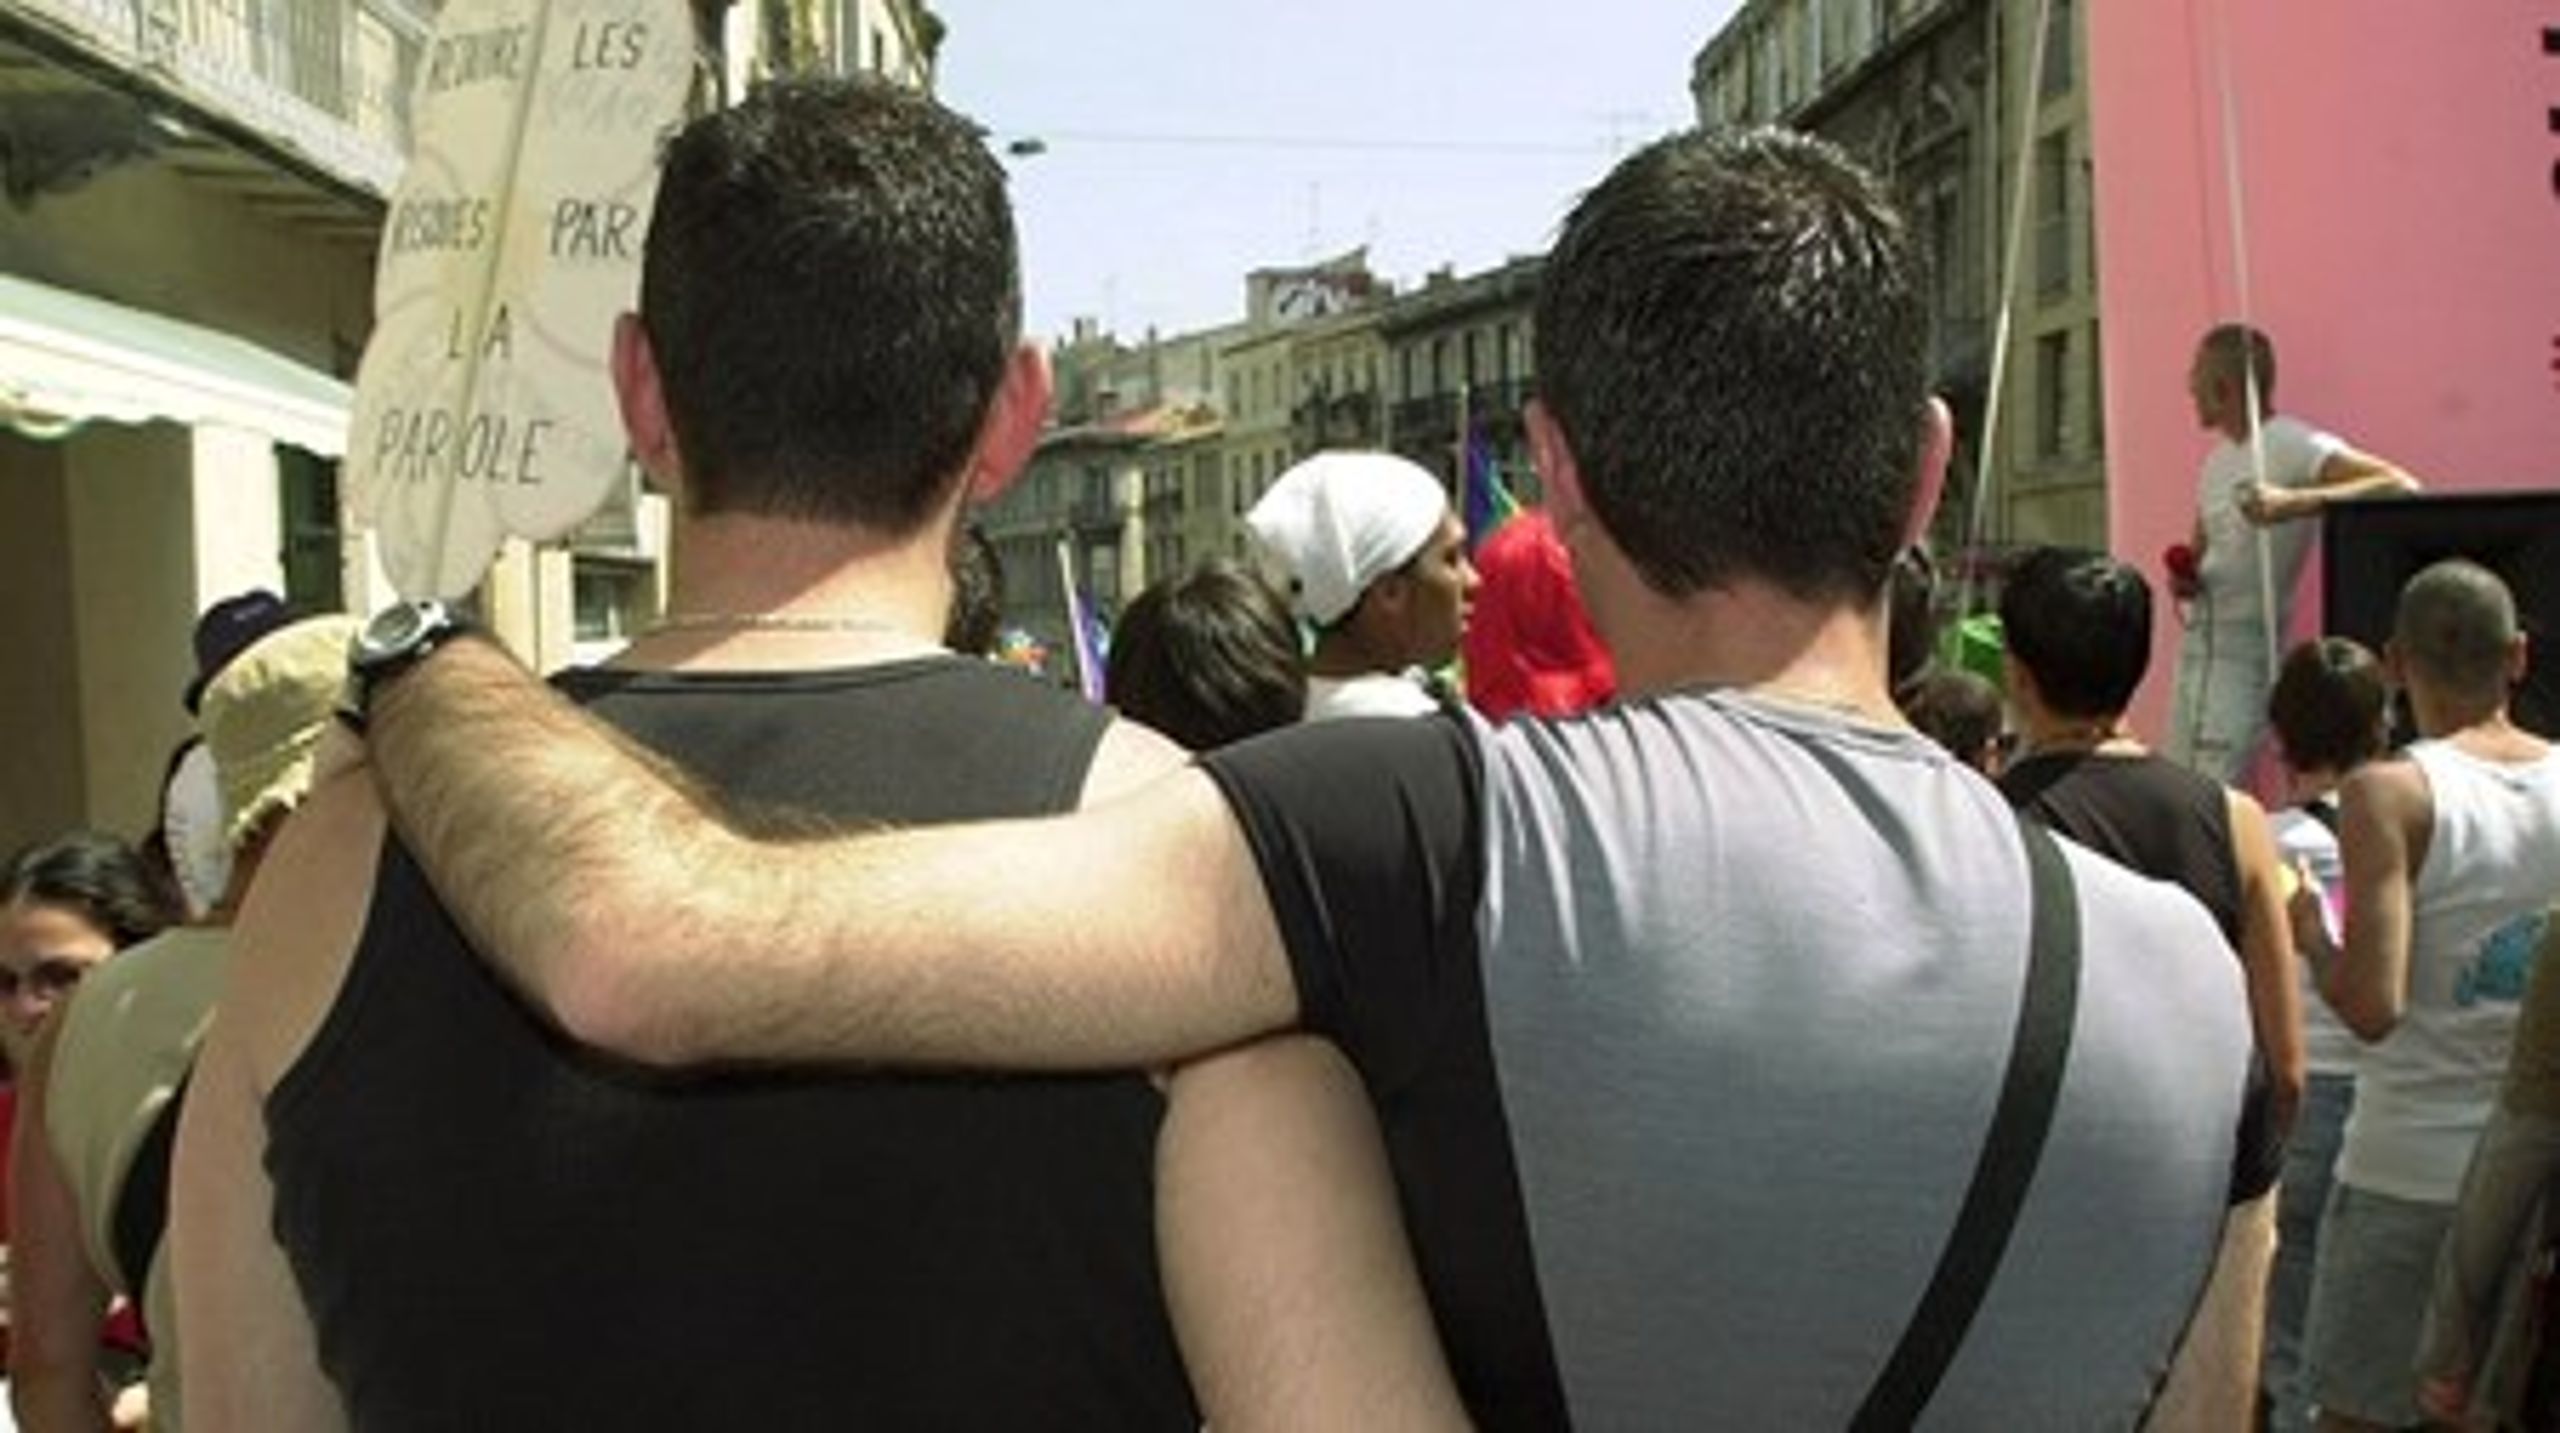 Mens stadig flere EU-lande indfører homo-ægteskaber vil et nyt kontroversielt borgerinitiativ have EU til kun at anerkende ægteskab mellem en mand og en kvinde.